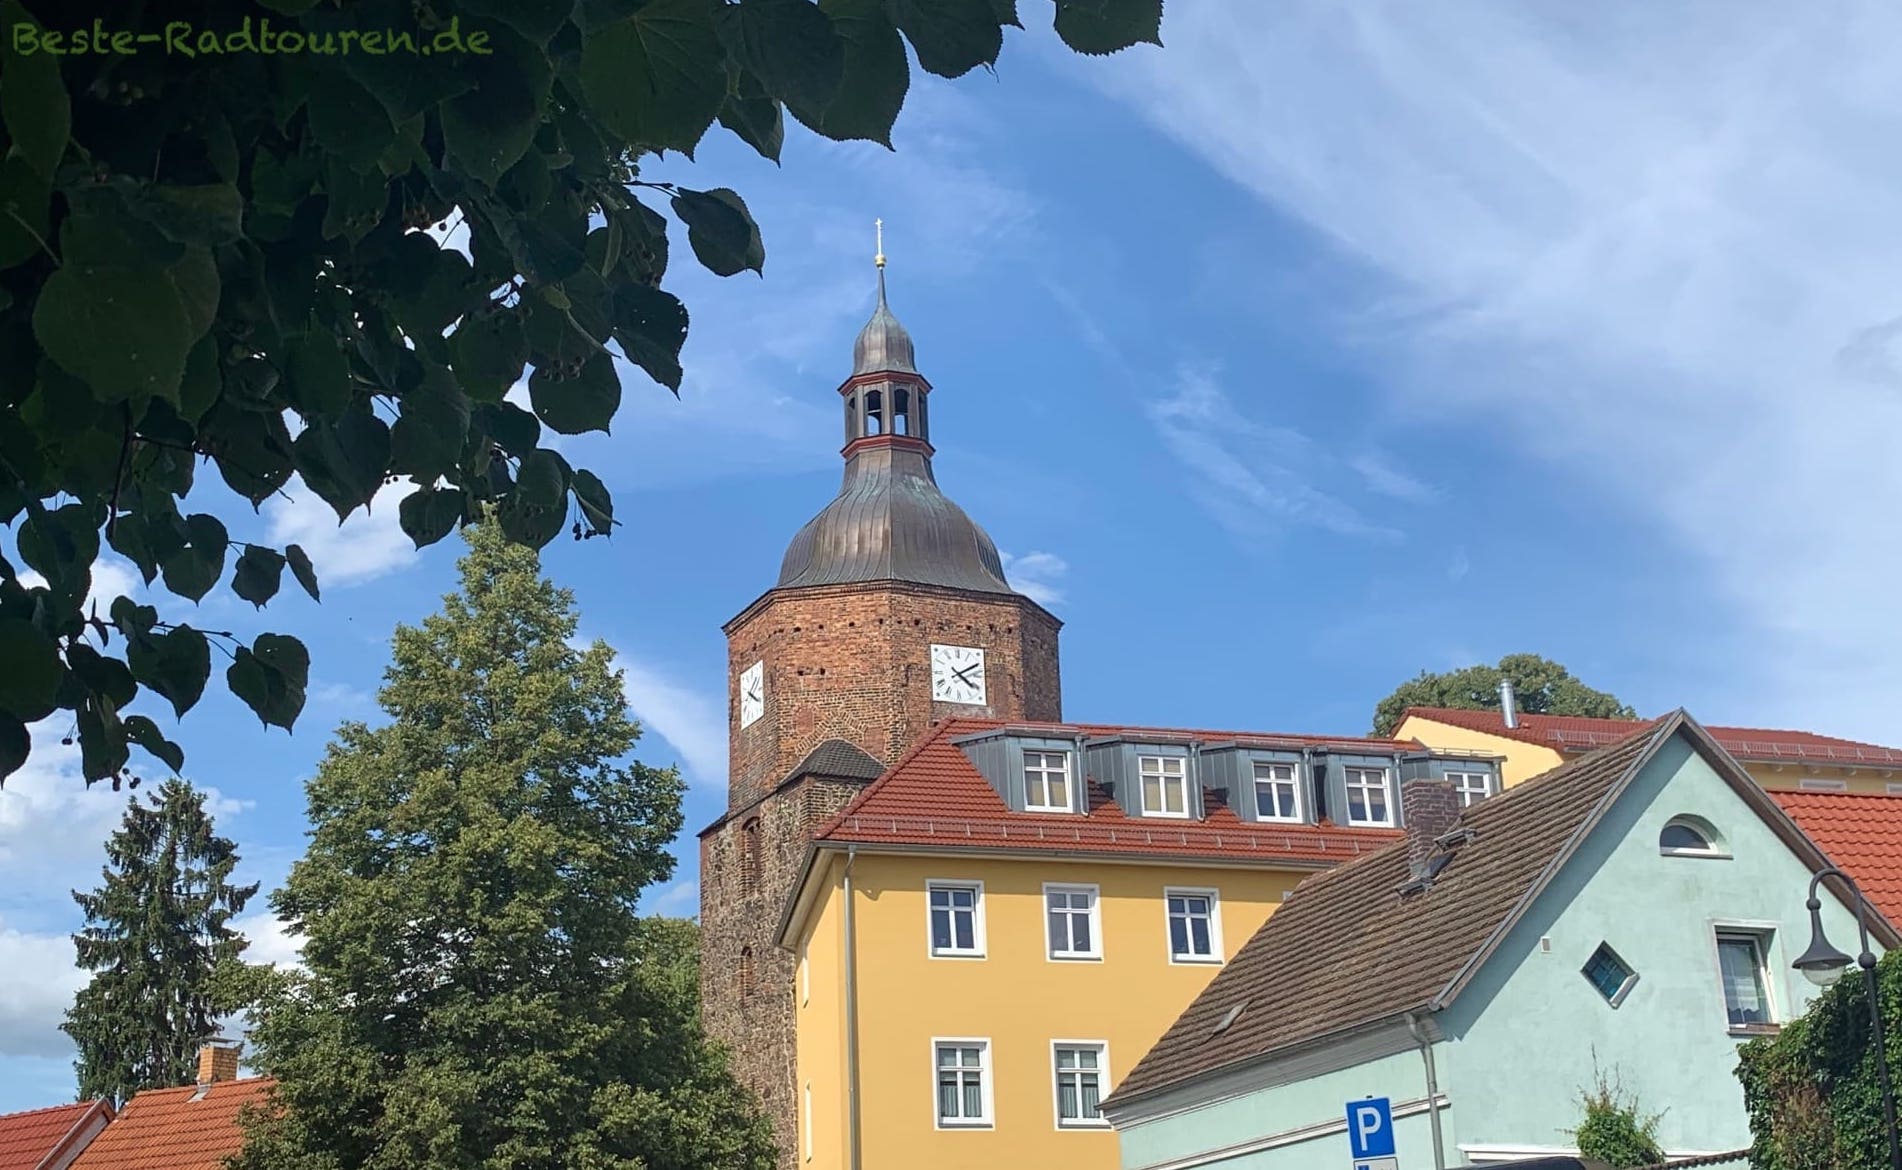 Foto vom Gurkenradweg aus: Häuser in Vetschau und Turm der Wendisch-Deutschen Doppelkirche